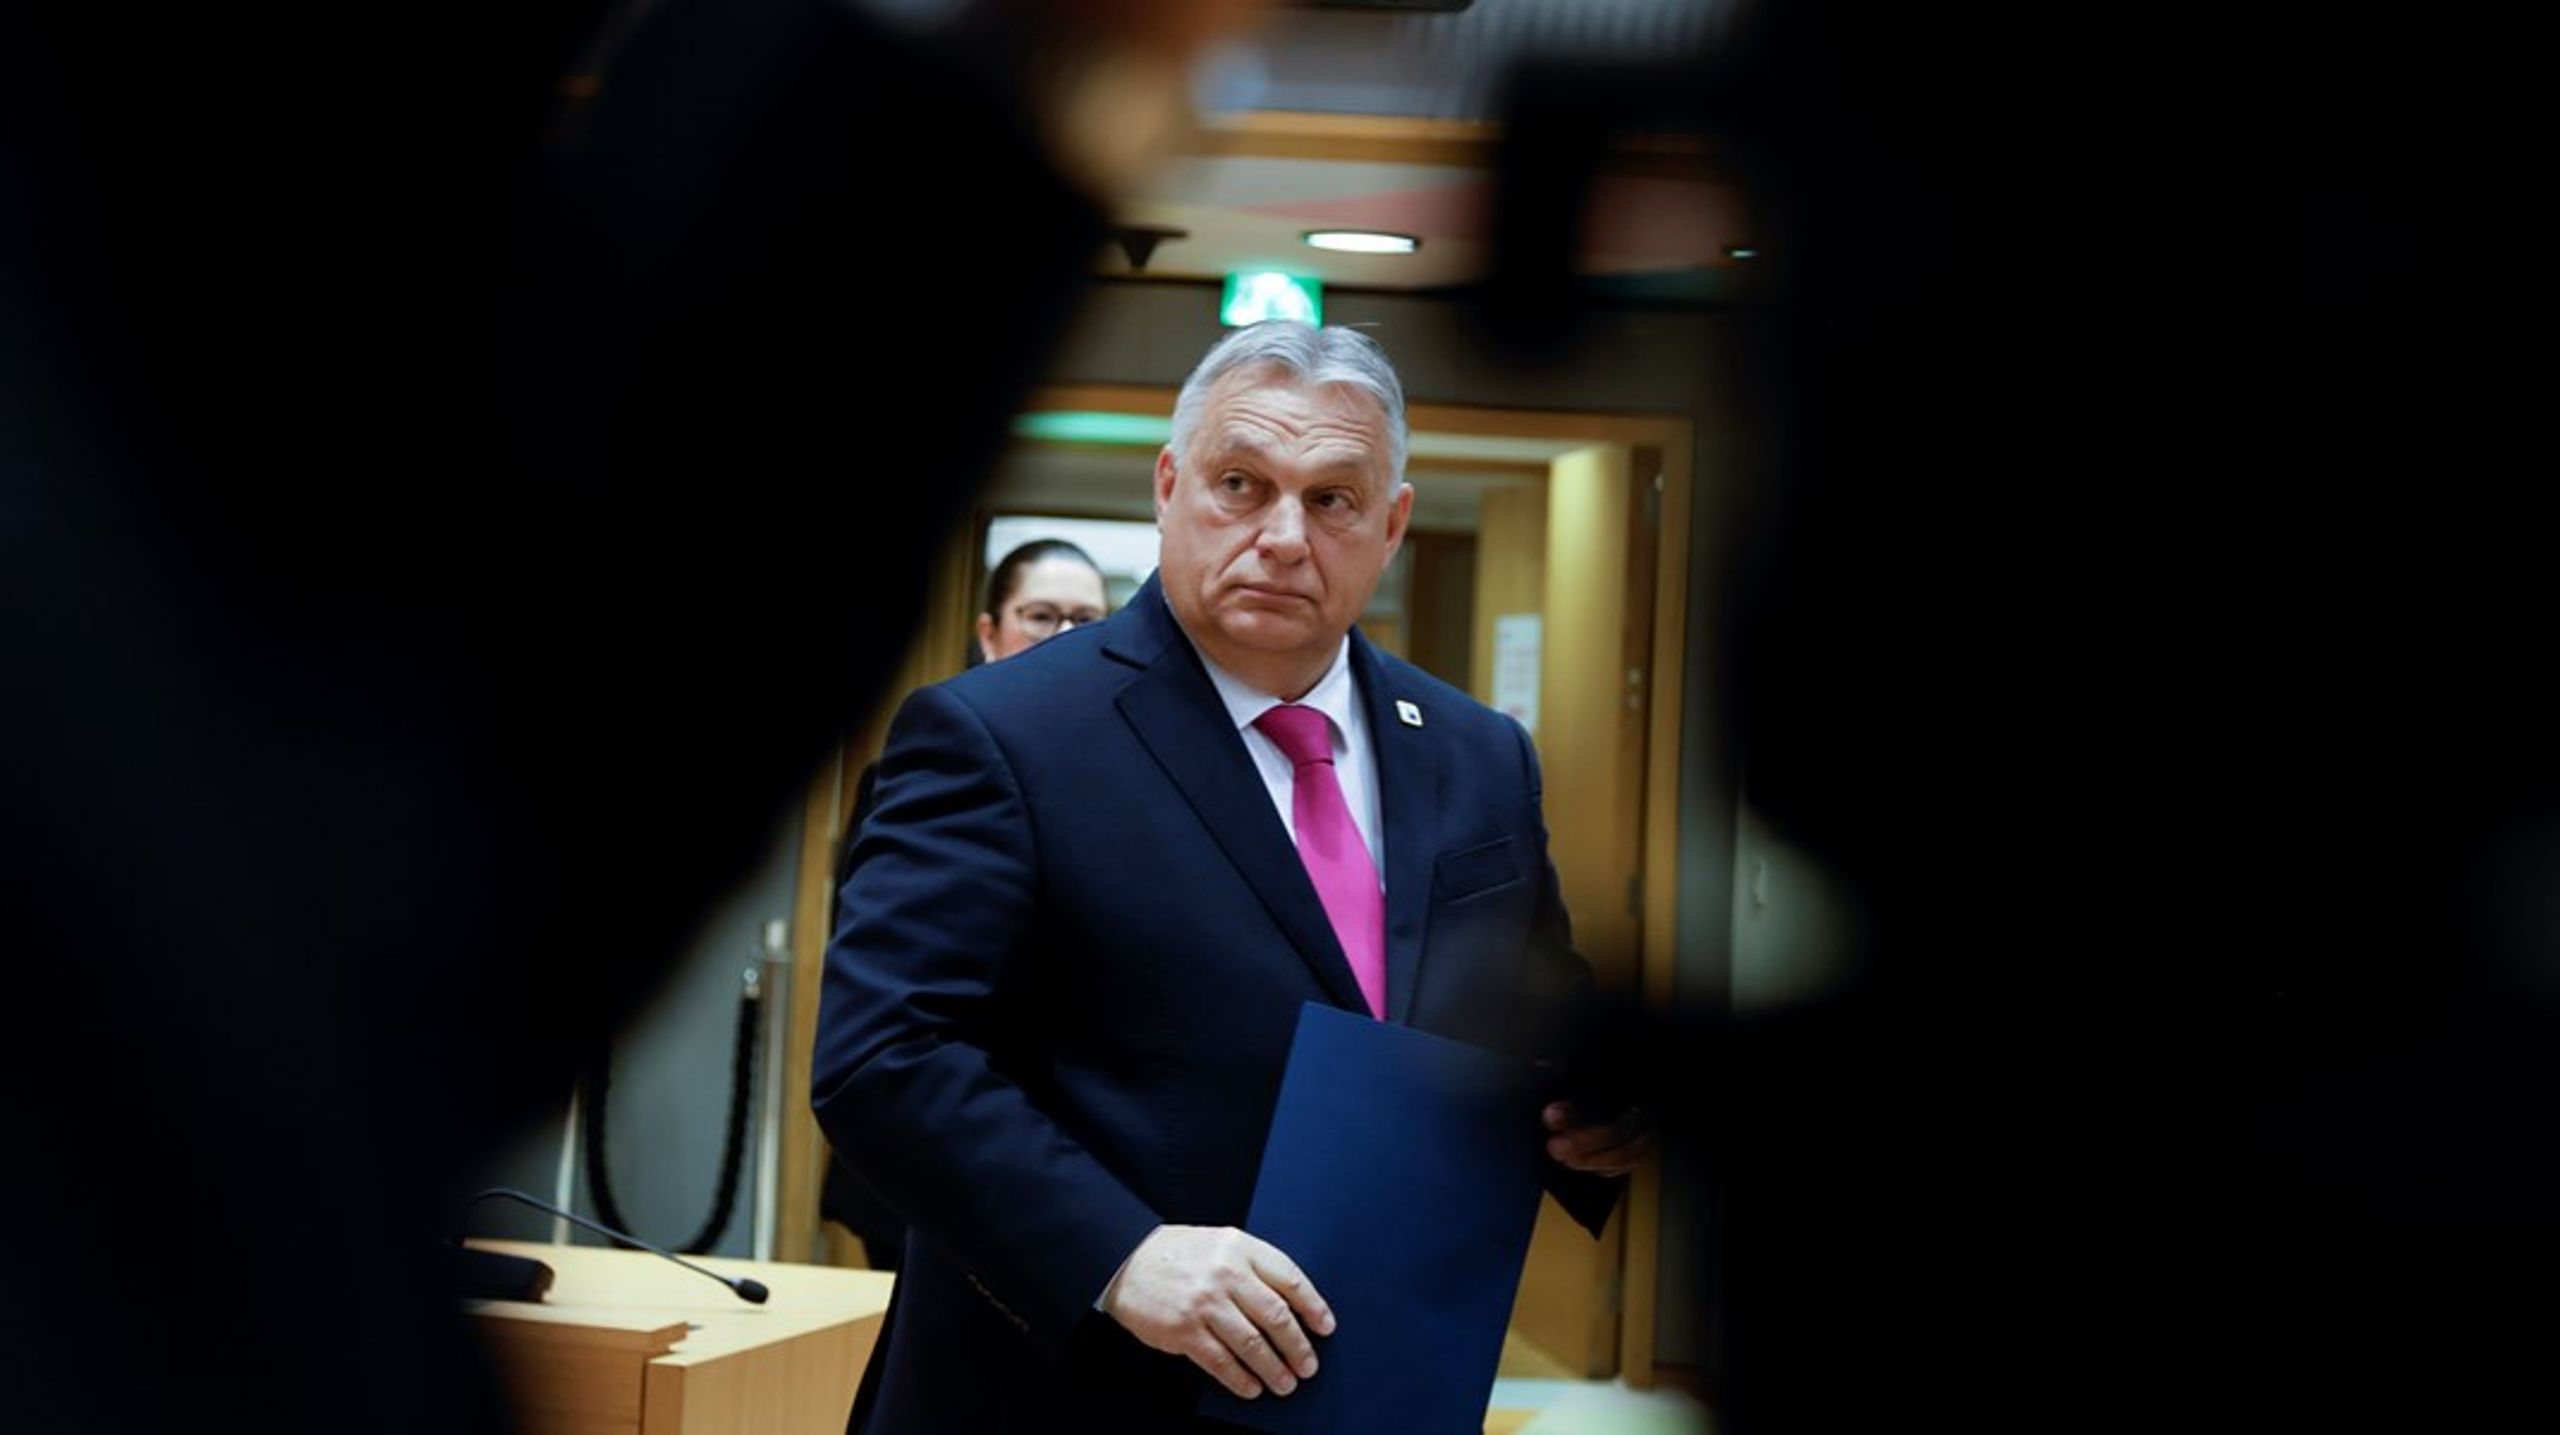 ”Det är ett helt meningslöst, irrationellt och felaktigt beslut att inleda förhandlingar med Ukraina under dessa omständigheter, och Ungern kommer inte att ändra sig på den punkten”, säger&nbsp;Viktor Orbán efter att övriga EU-länder beslutat att inleda förhandlingar om medlemskap för Ukraina.&nbsp;